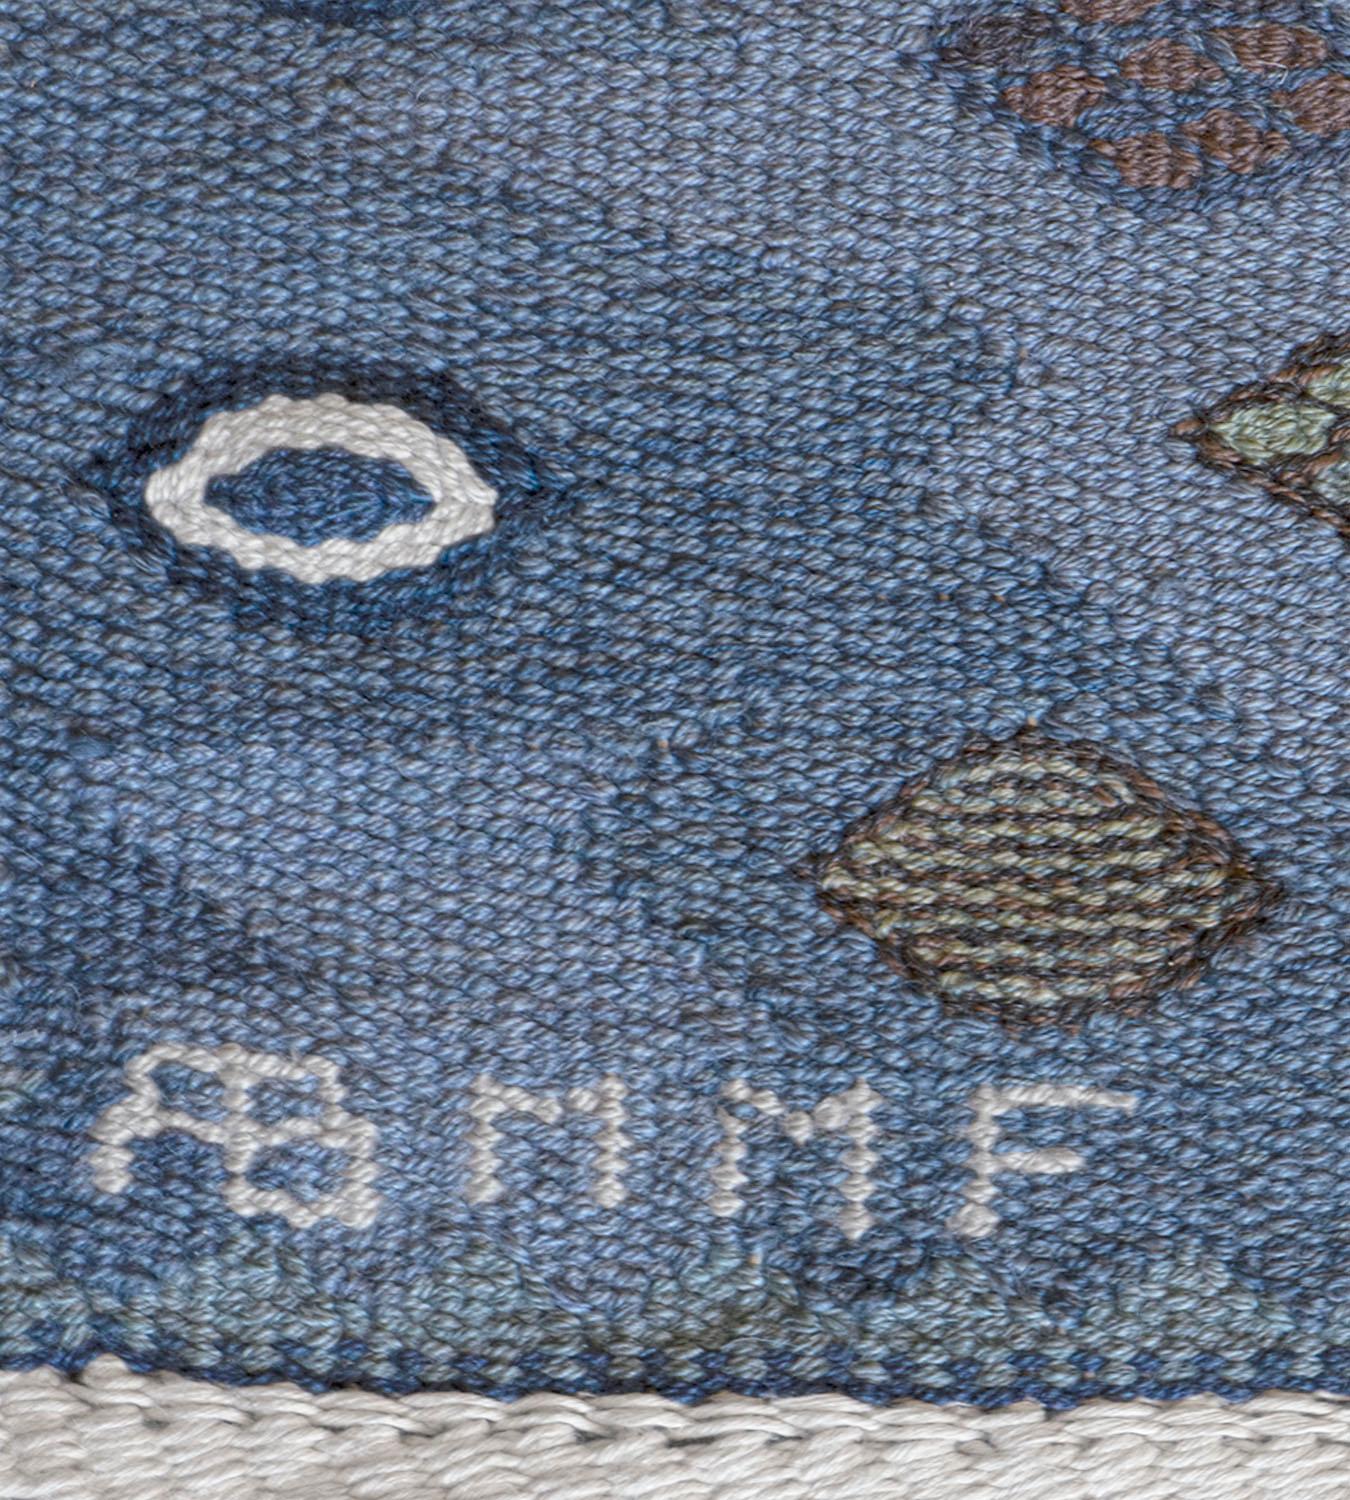 Ce tapis suédois tissé à la main présente un champ nuancé de bleu, de taupe et de brun violet avec des bandes horizontales de petits losanges polychromes entourant de larges bandes contenant de grands losanges dentelés reliés entre eux, chacun